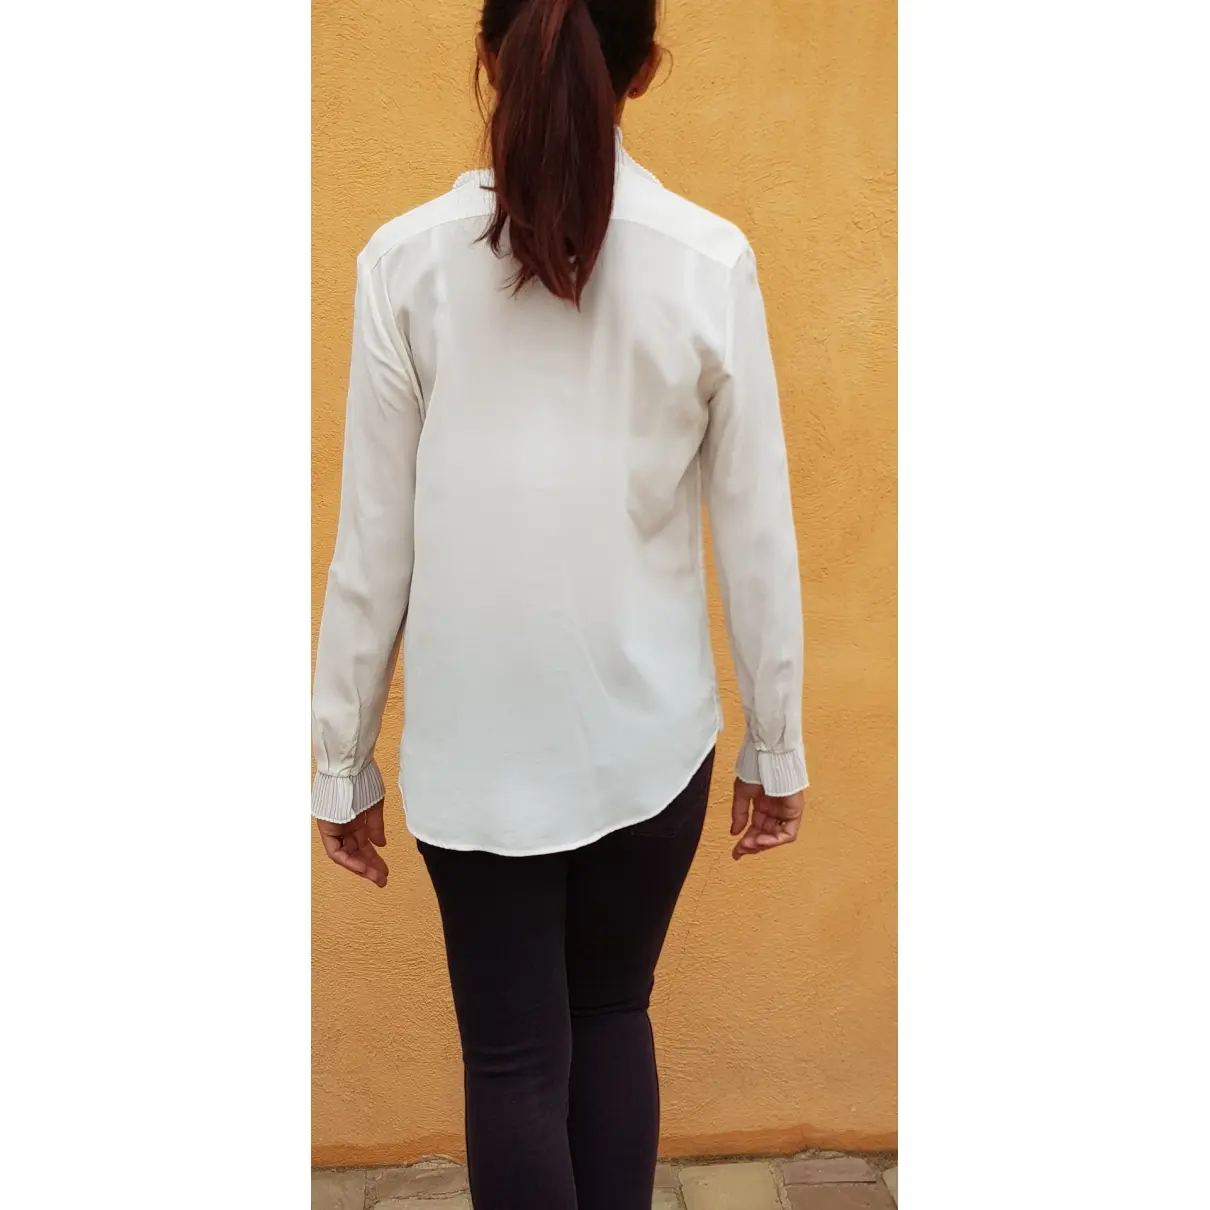 Sandro Spring Summer 2019 silk blouse for sale